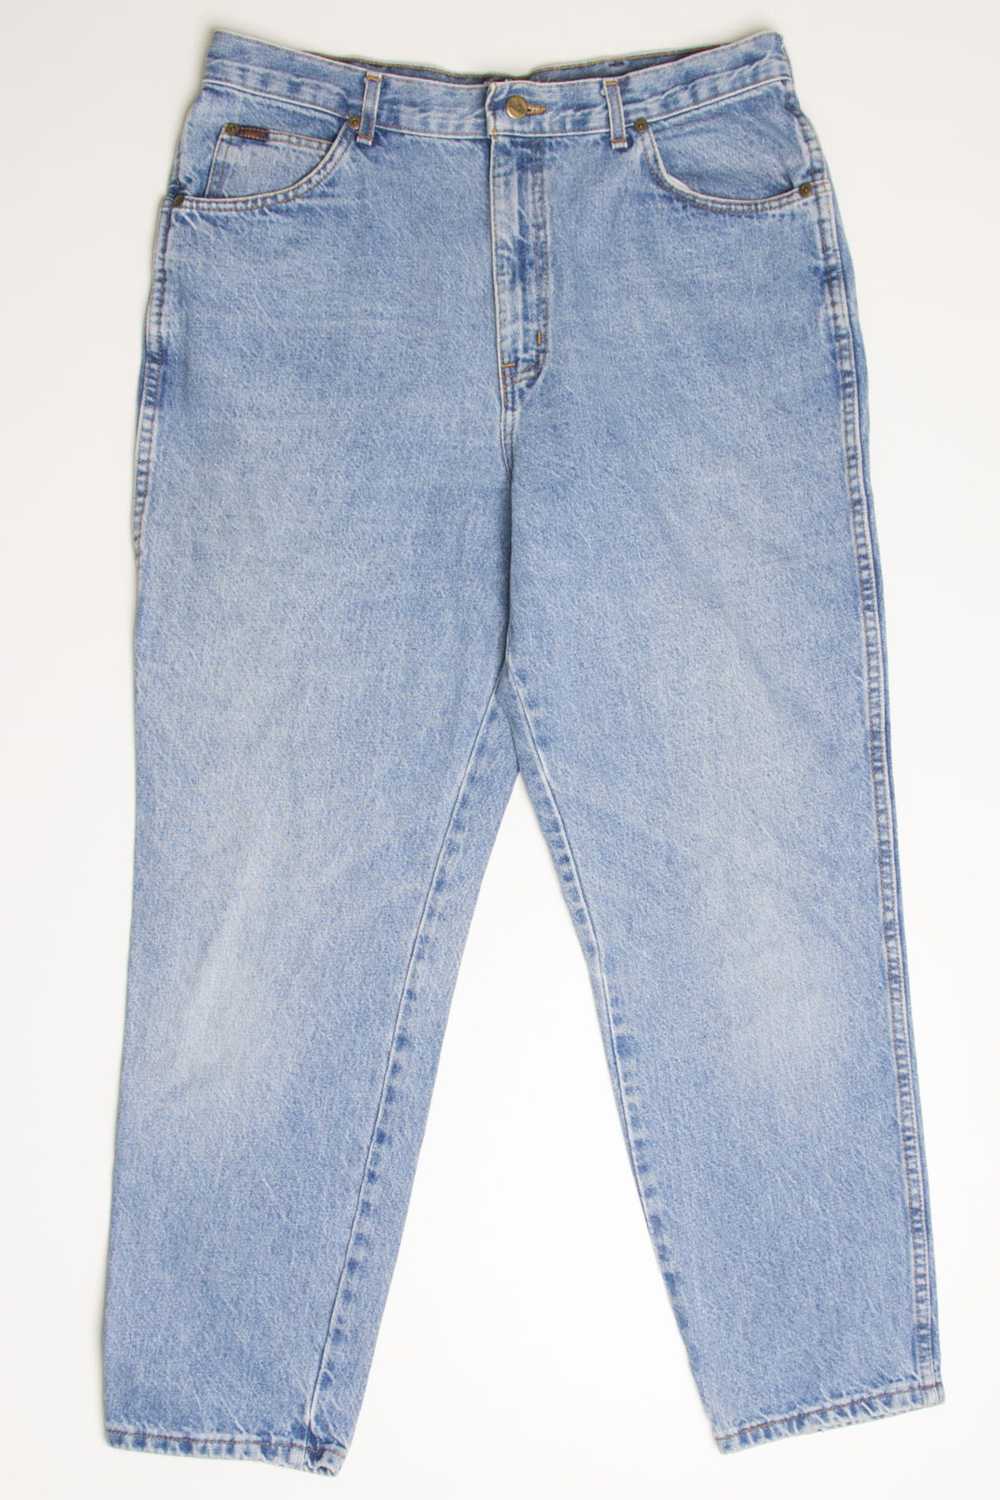 Vintage Chic Denim Jeans (sz. 20W) - image 2